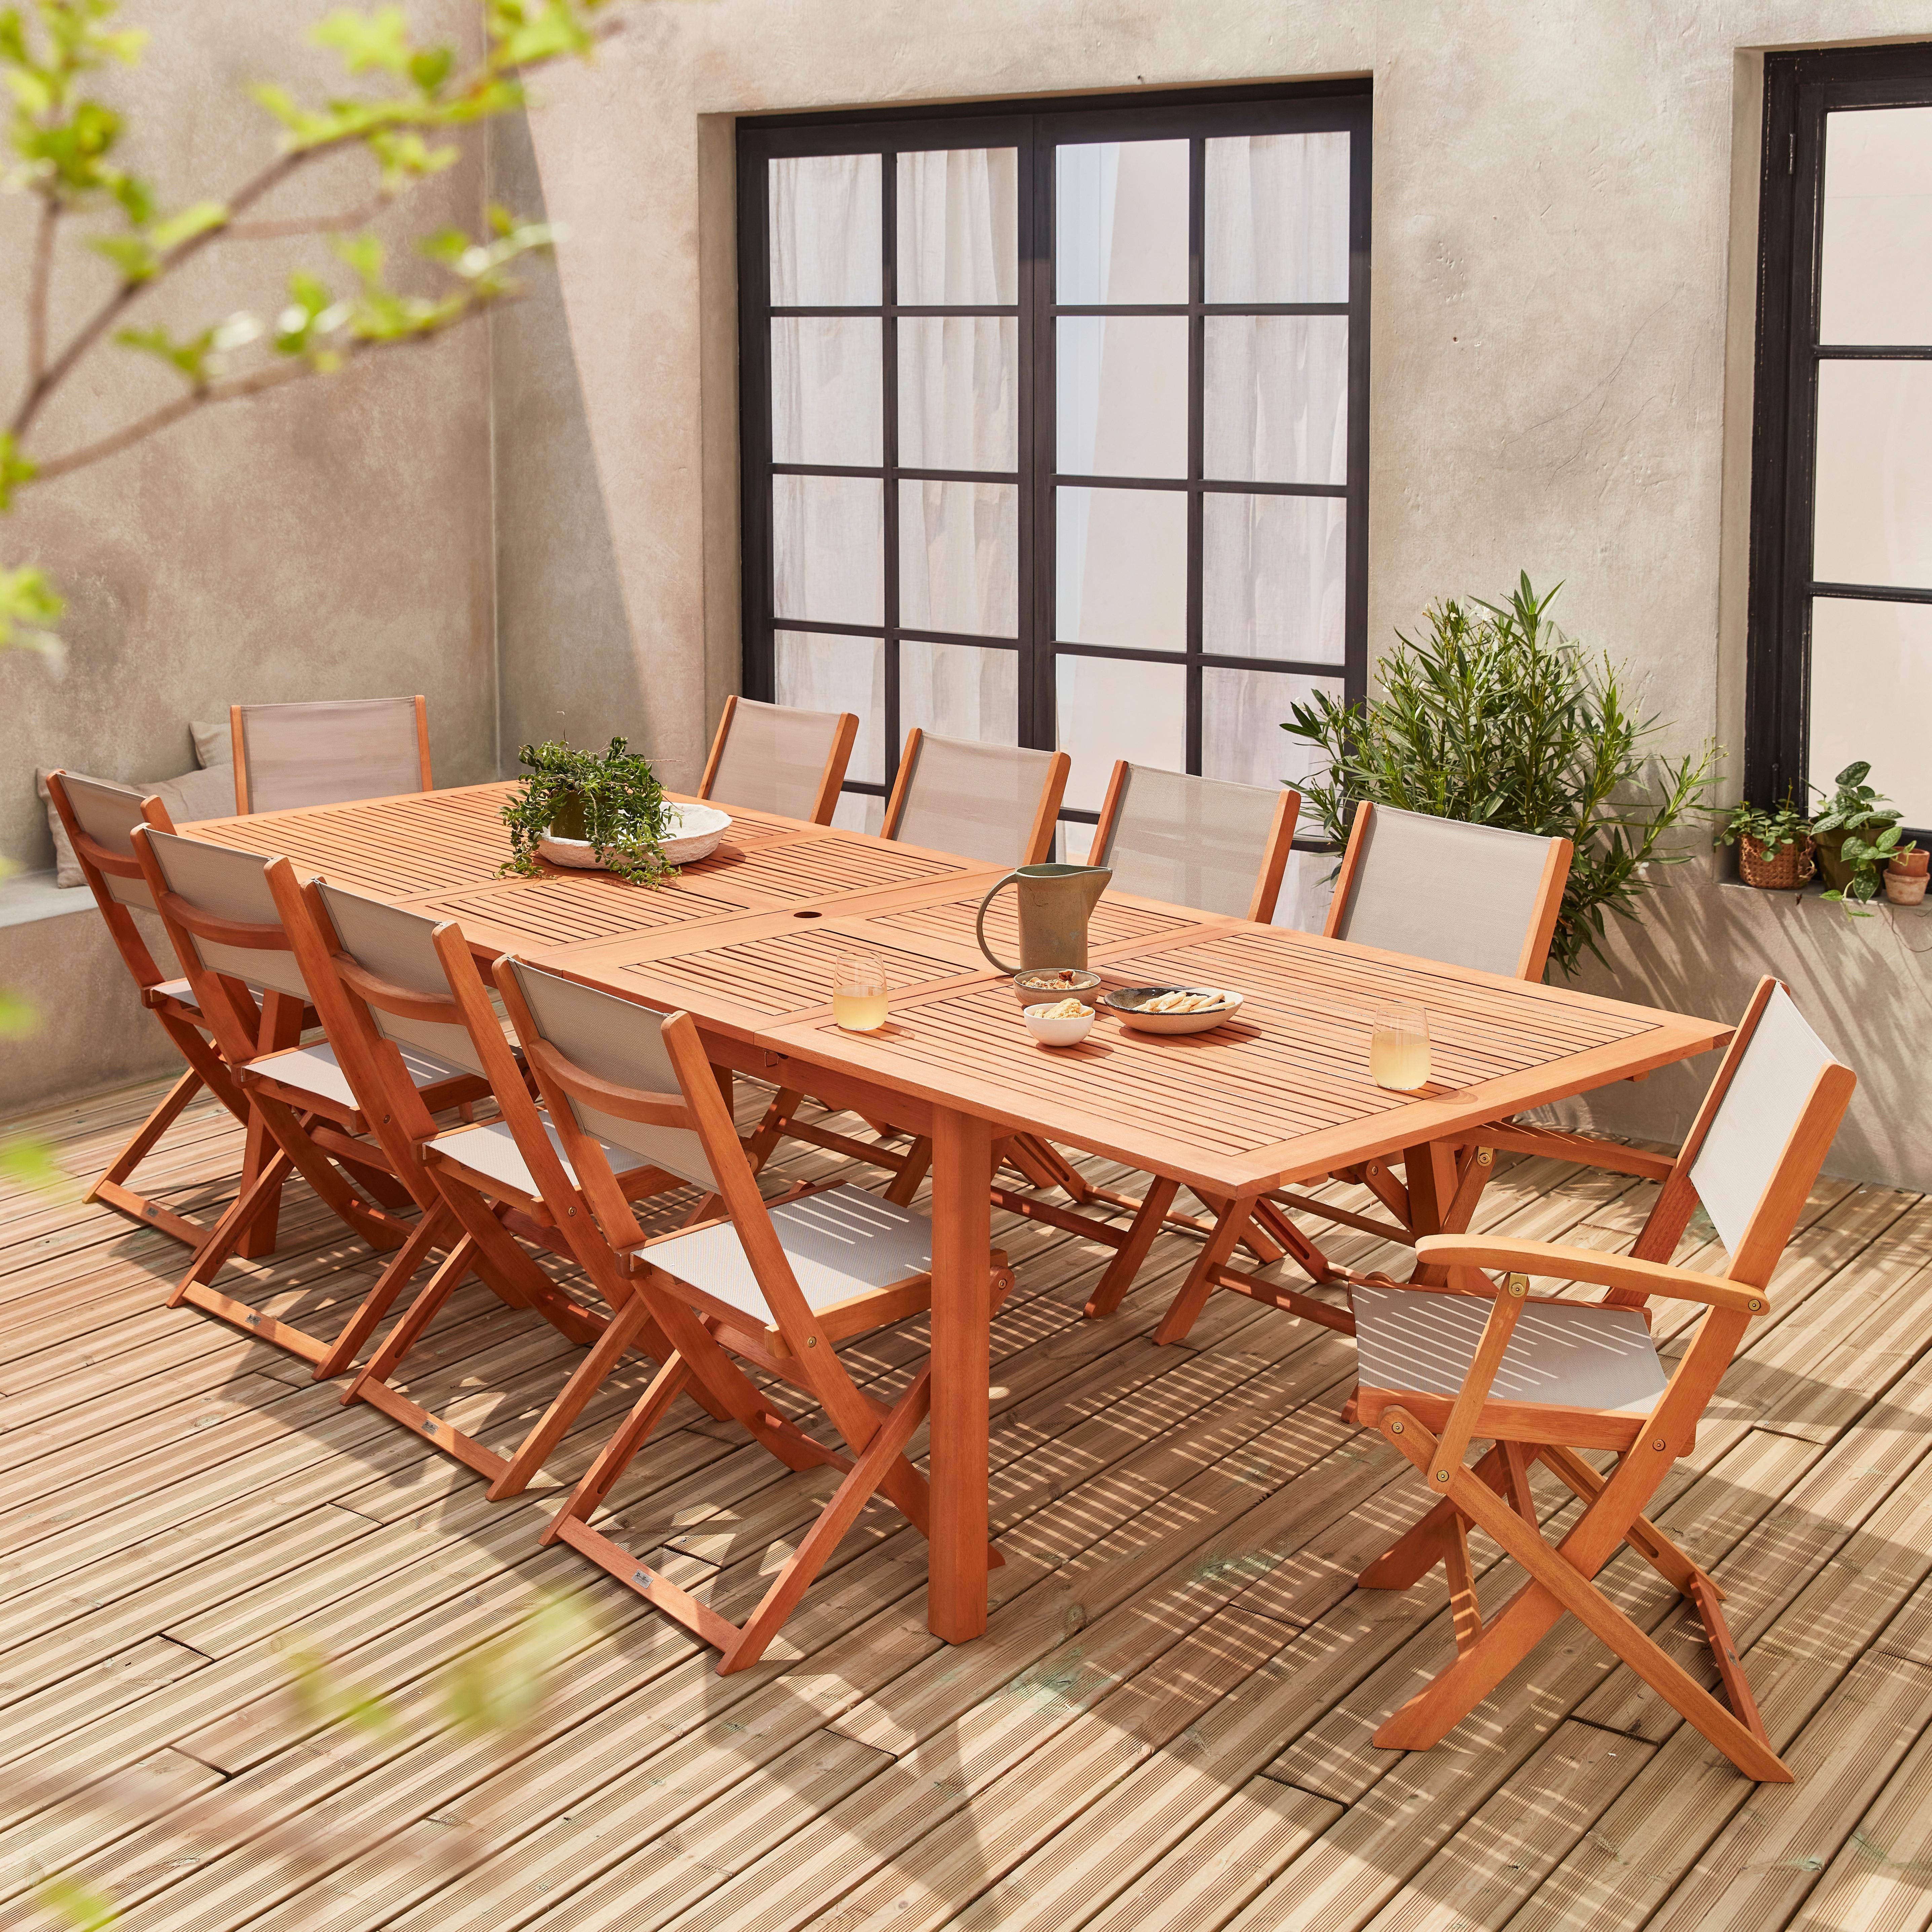 Ausziehbare Gartenmöbel aus Holz - Almeria Tisch 200/250/300cm mit 2 Verlängerungen, 2 Sesseln und 8 Stühlen, aus geöltem FSC Eukalyptusholz und taupgrau Textilene,sweeek,Photo1